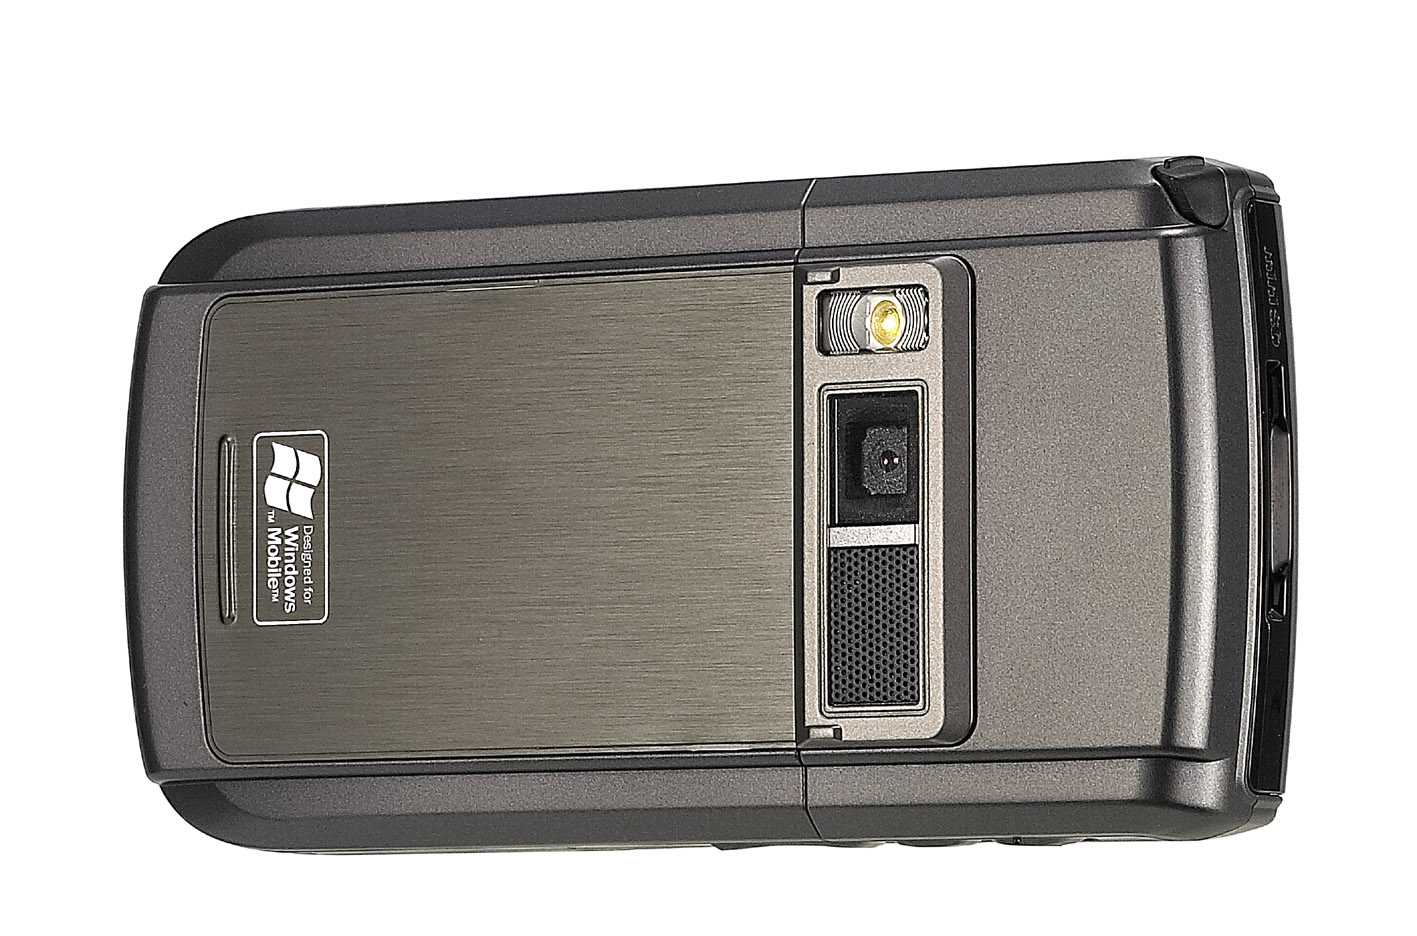 Аккумулятор для asus p525 (palmexx px/ap525xl) - купить , скидки, цена, отзывы, обзор, характеристики - аккумуляторы для мобильных телефонов